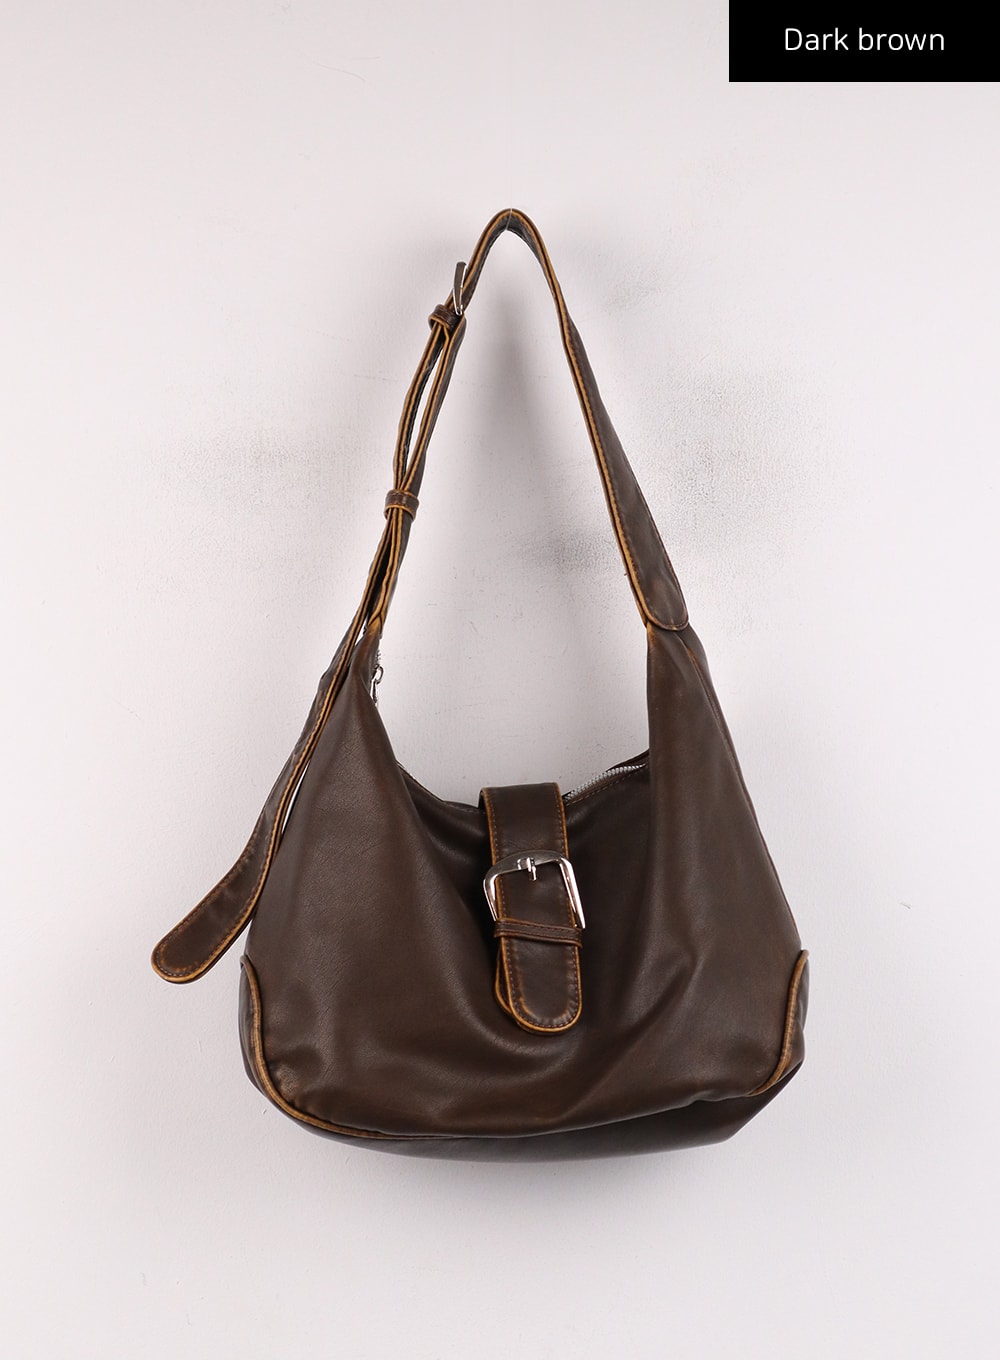 leather-buckled-tote-bag-ij419 / Dark brown